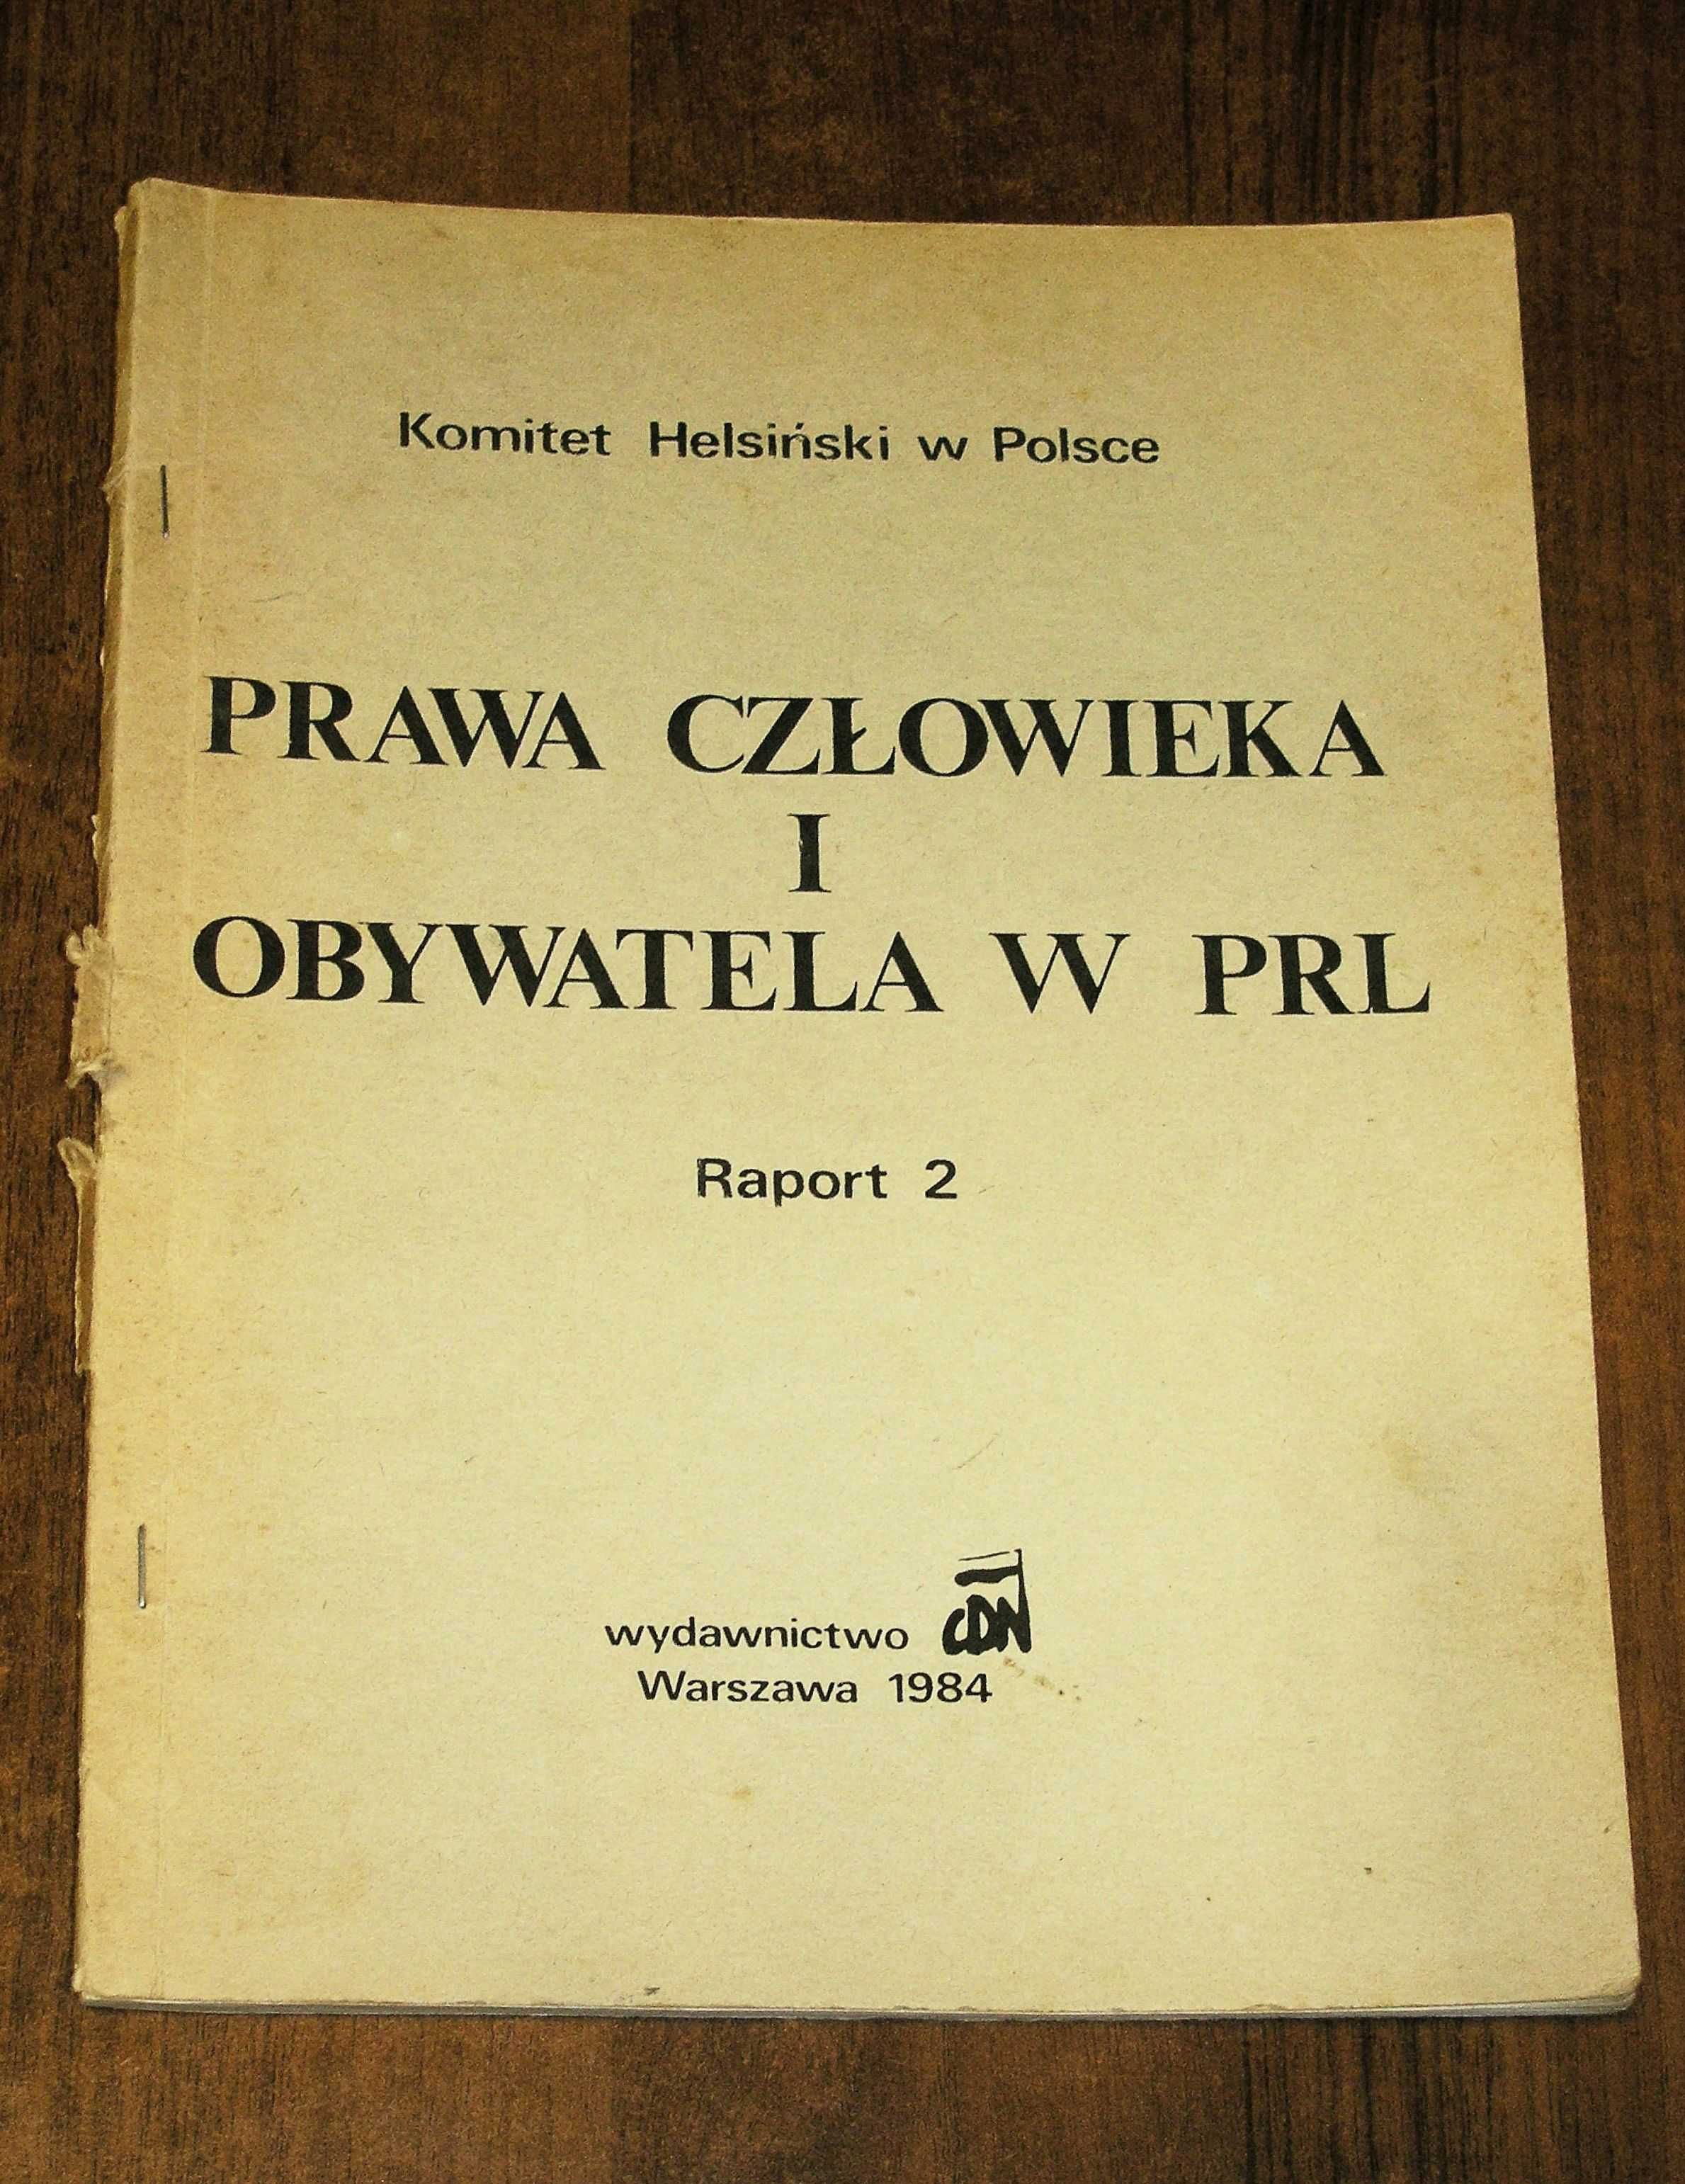 Prawa człowieka i obywatela w PRL Raport 2, Komitet Helsiński w Polsce